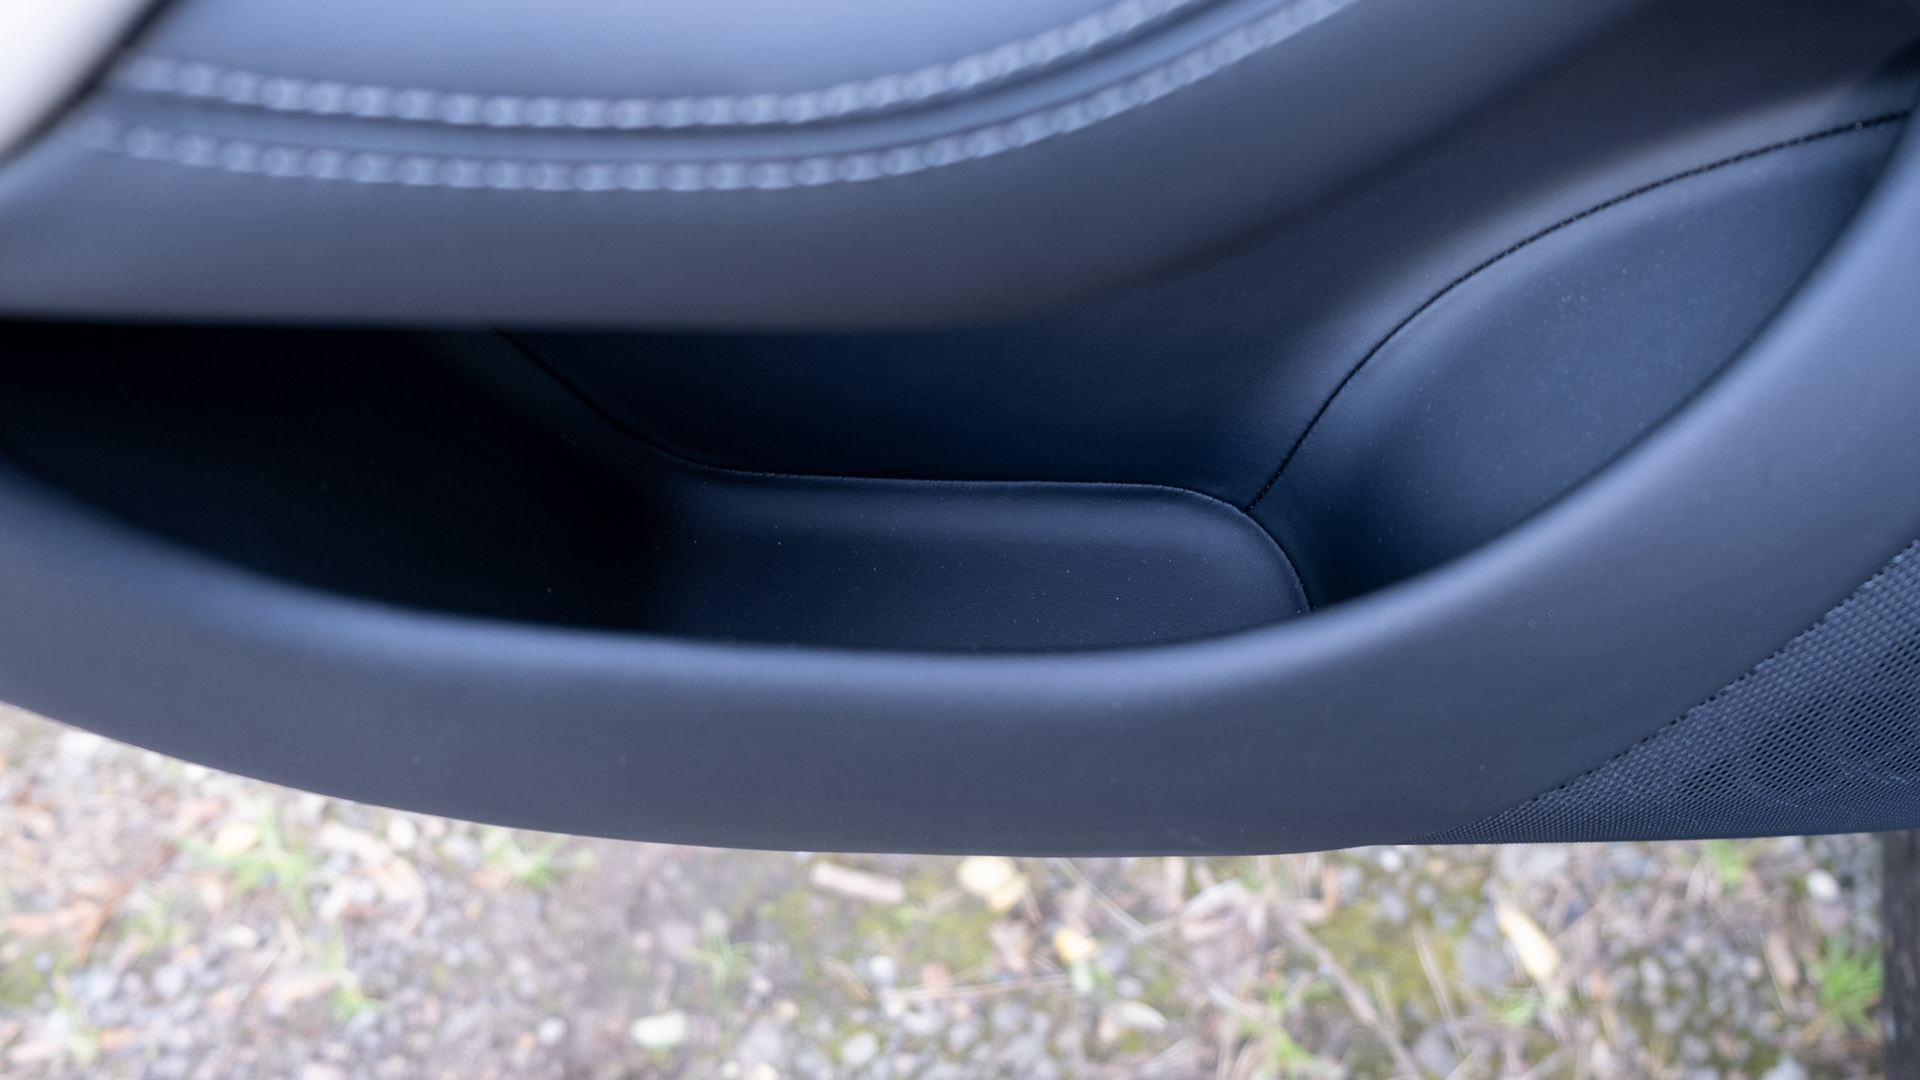 Tesla Model S Plaid rear door compartment